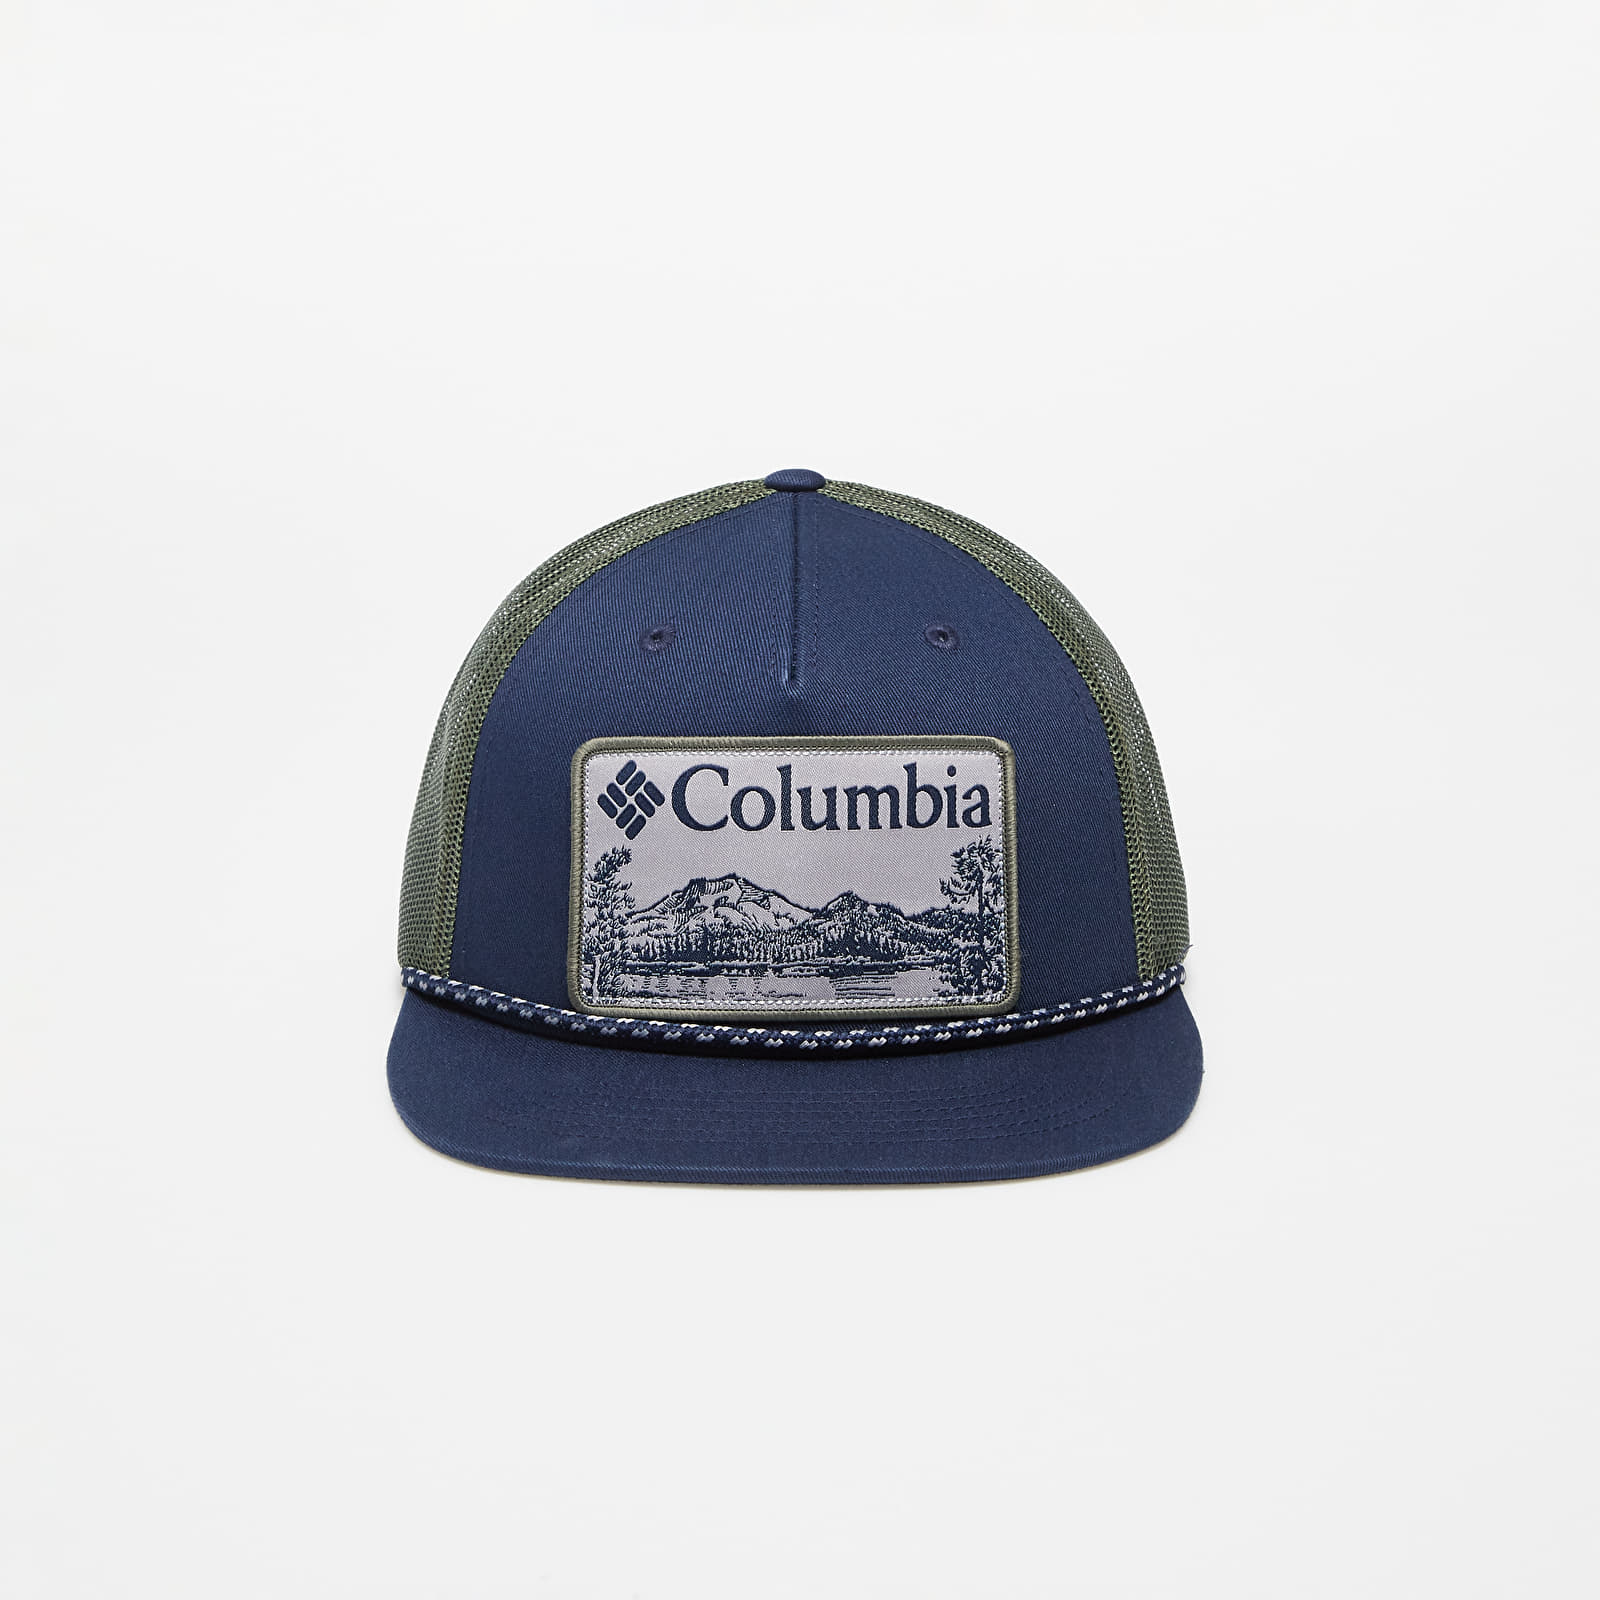 Columbia Flat Brim Snap Back Cap - Casquettes - Bonnets et